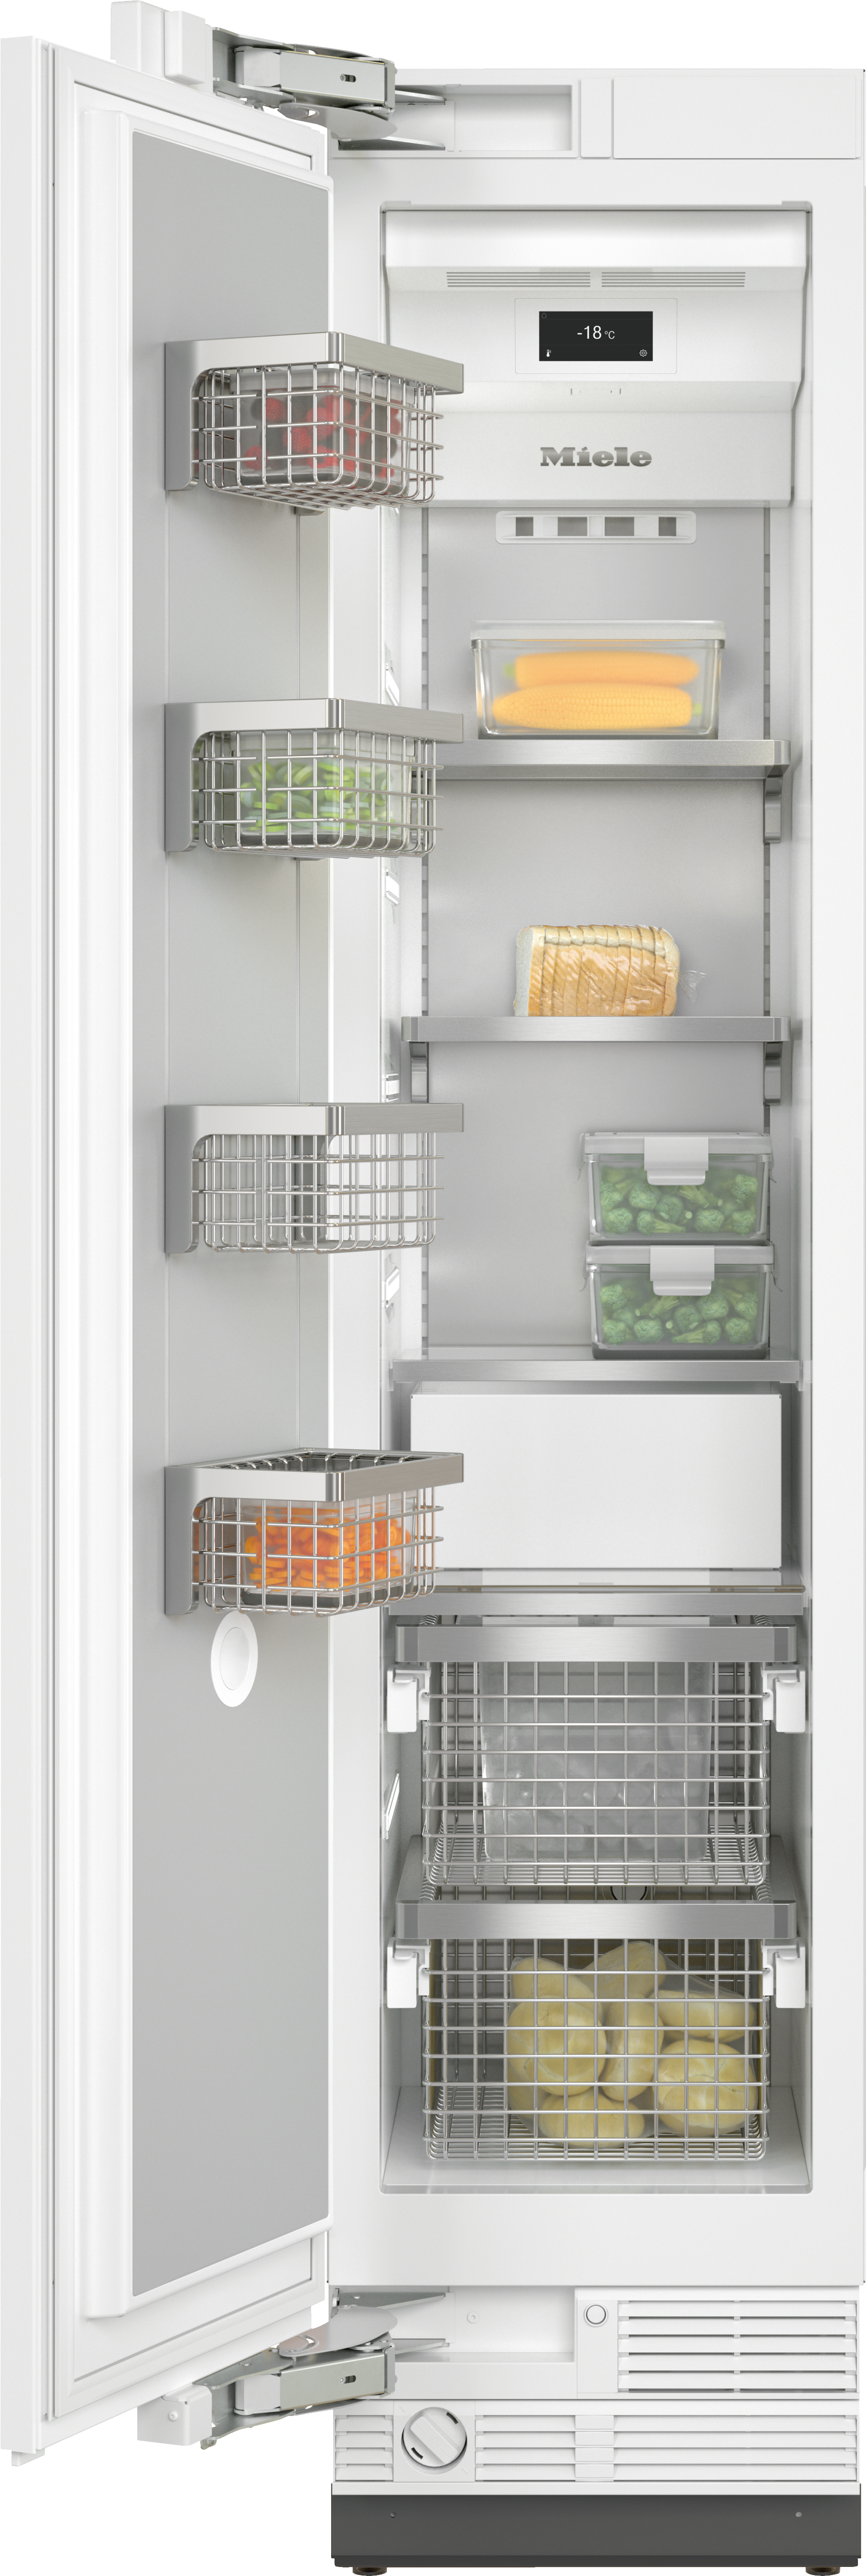 Réfrigérateurs/congélateurs - F 2412 Vi - 1